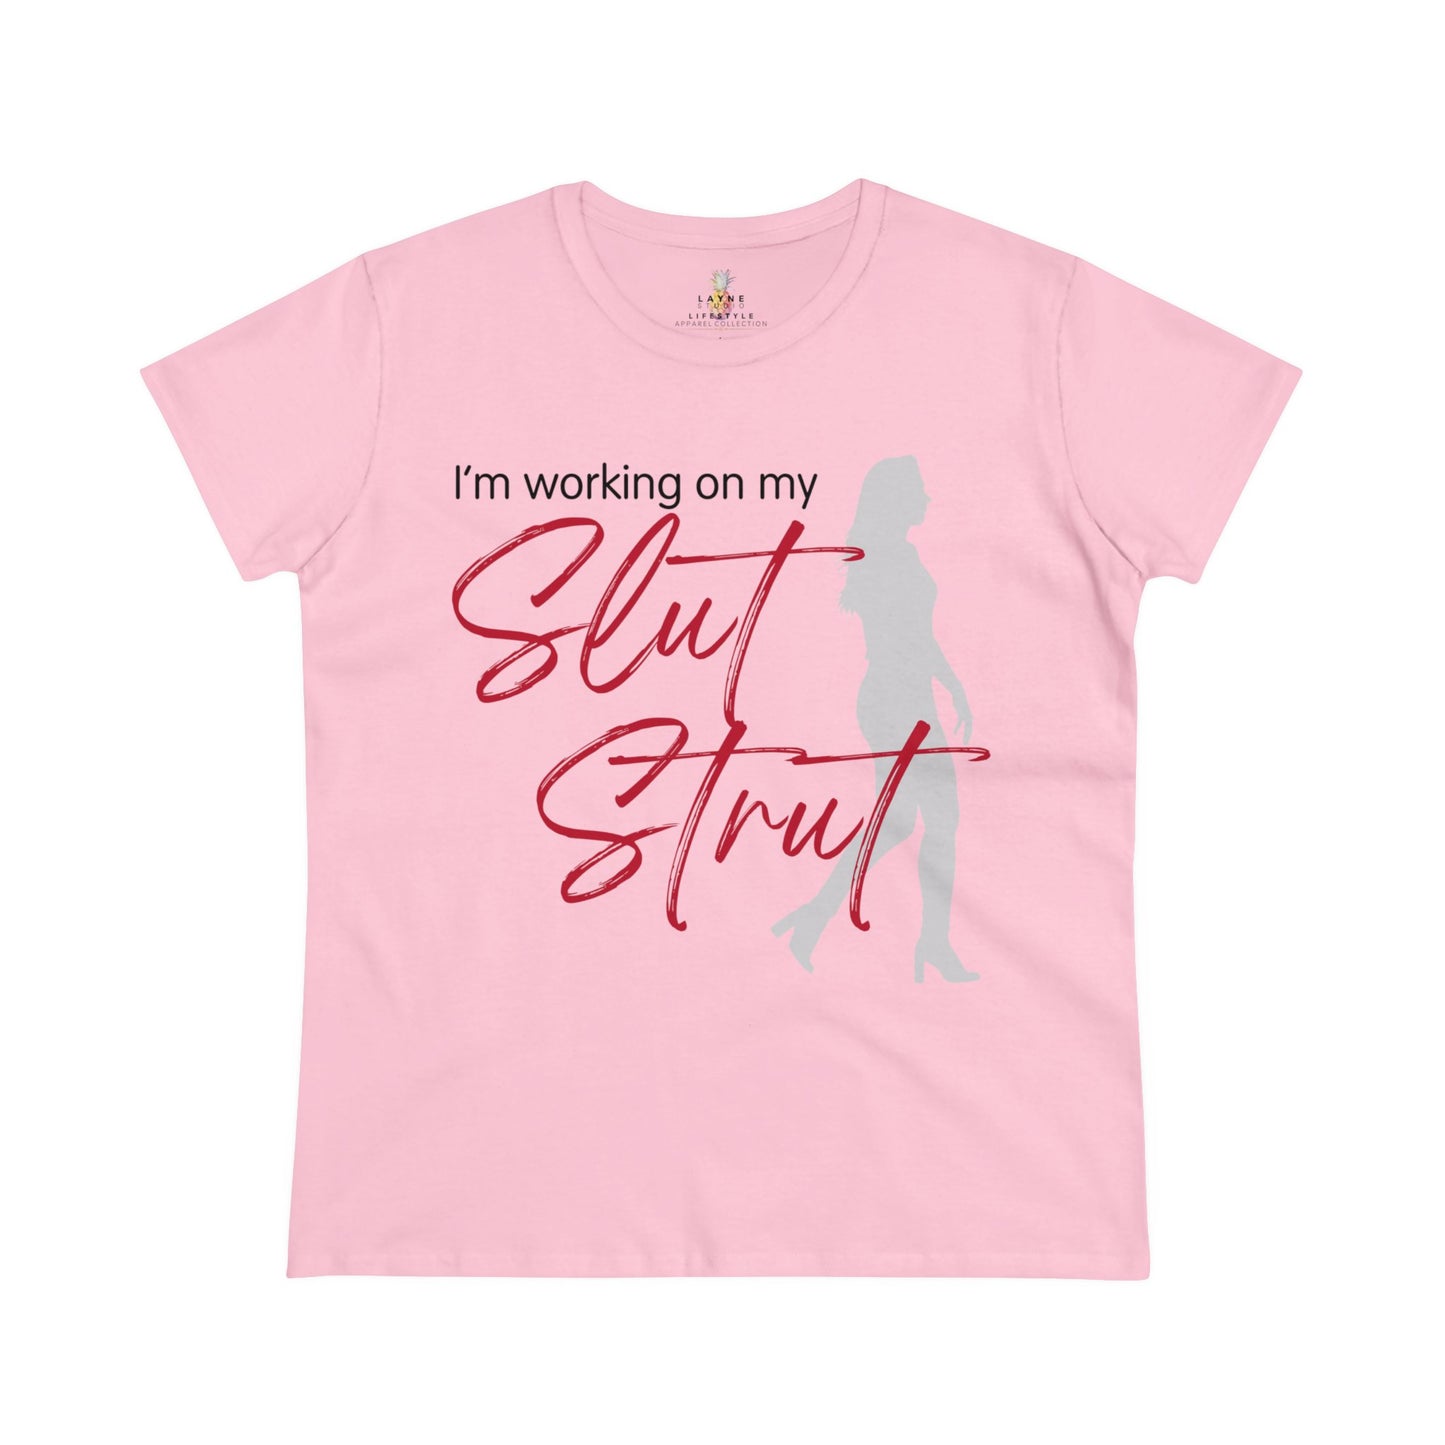 "Slut Strut" Graphic Women's Midweight Cotton Tee